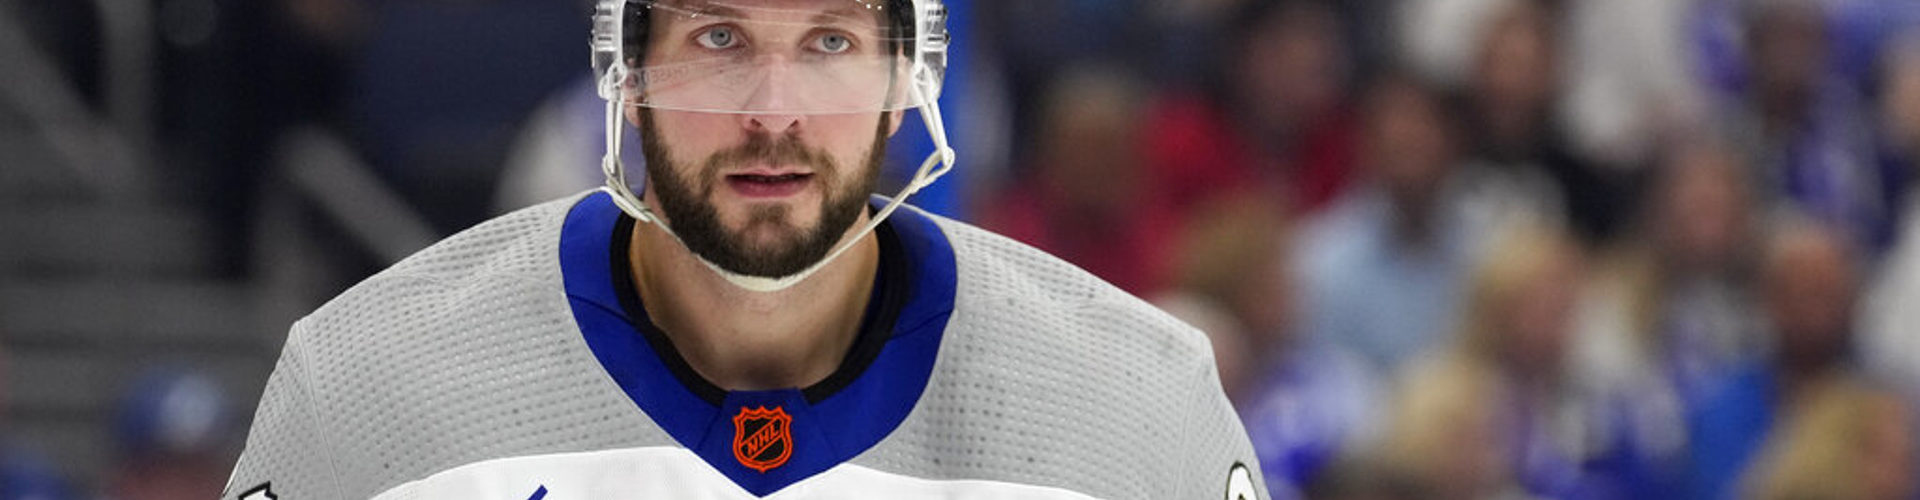 Кучеров повторил рекорд сезона по результативности в НХЛ